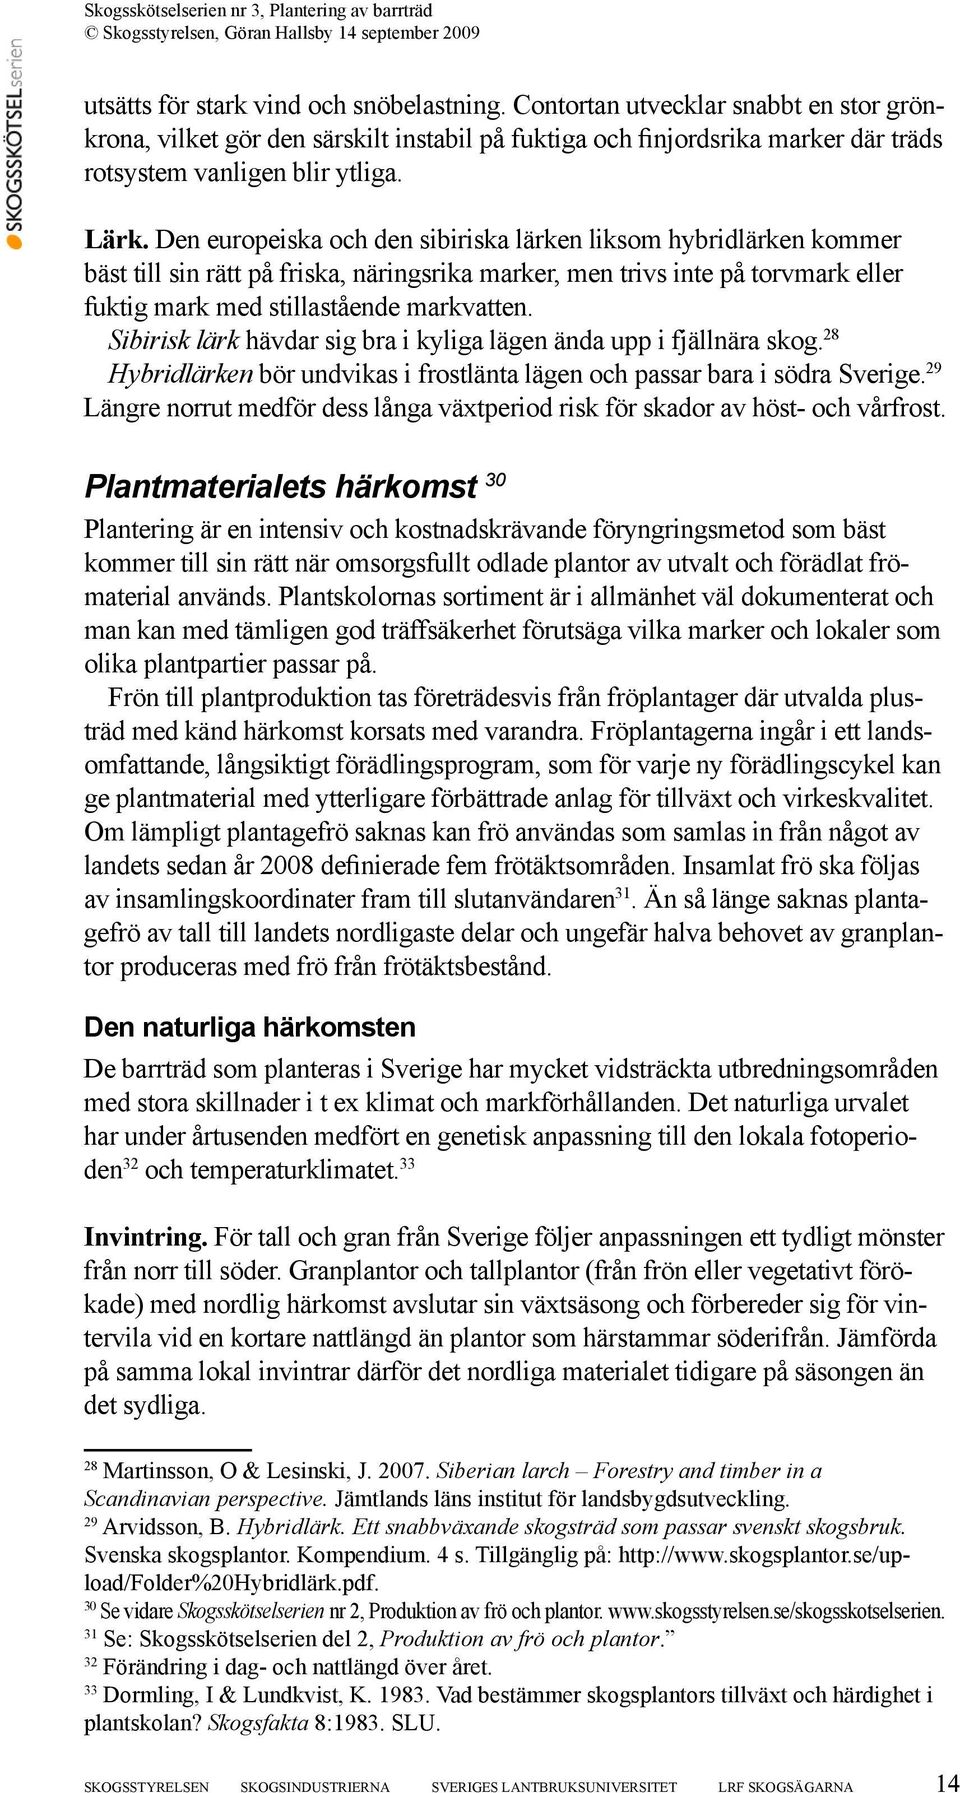 Sibirisk lärk hävdar sig bra i kyliga lägen ända upp i fjällnära skog. 28 Hybridlärken bör undvikas i frostlänta lägen och passar bara i södra Sverige.